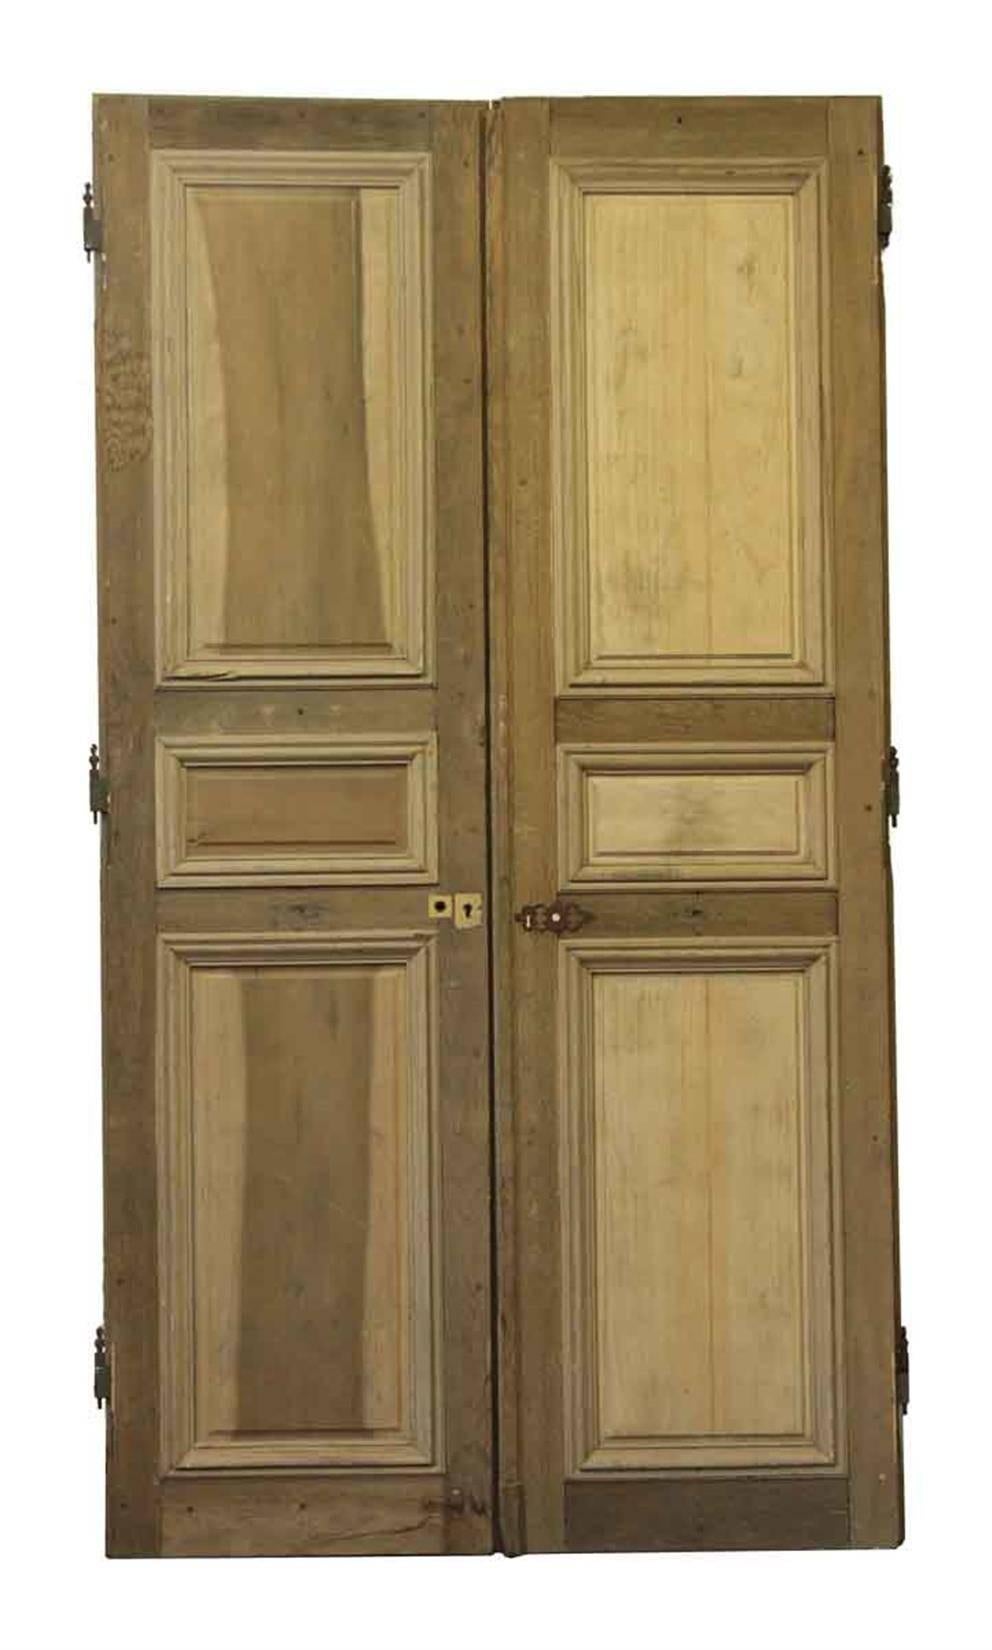 1870s French Provincial Oversized Doors with Door Janbs 1